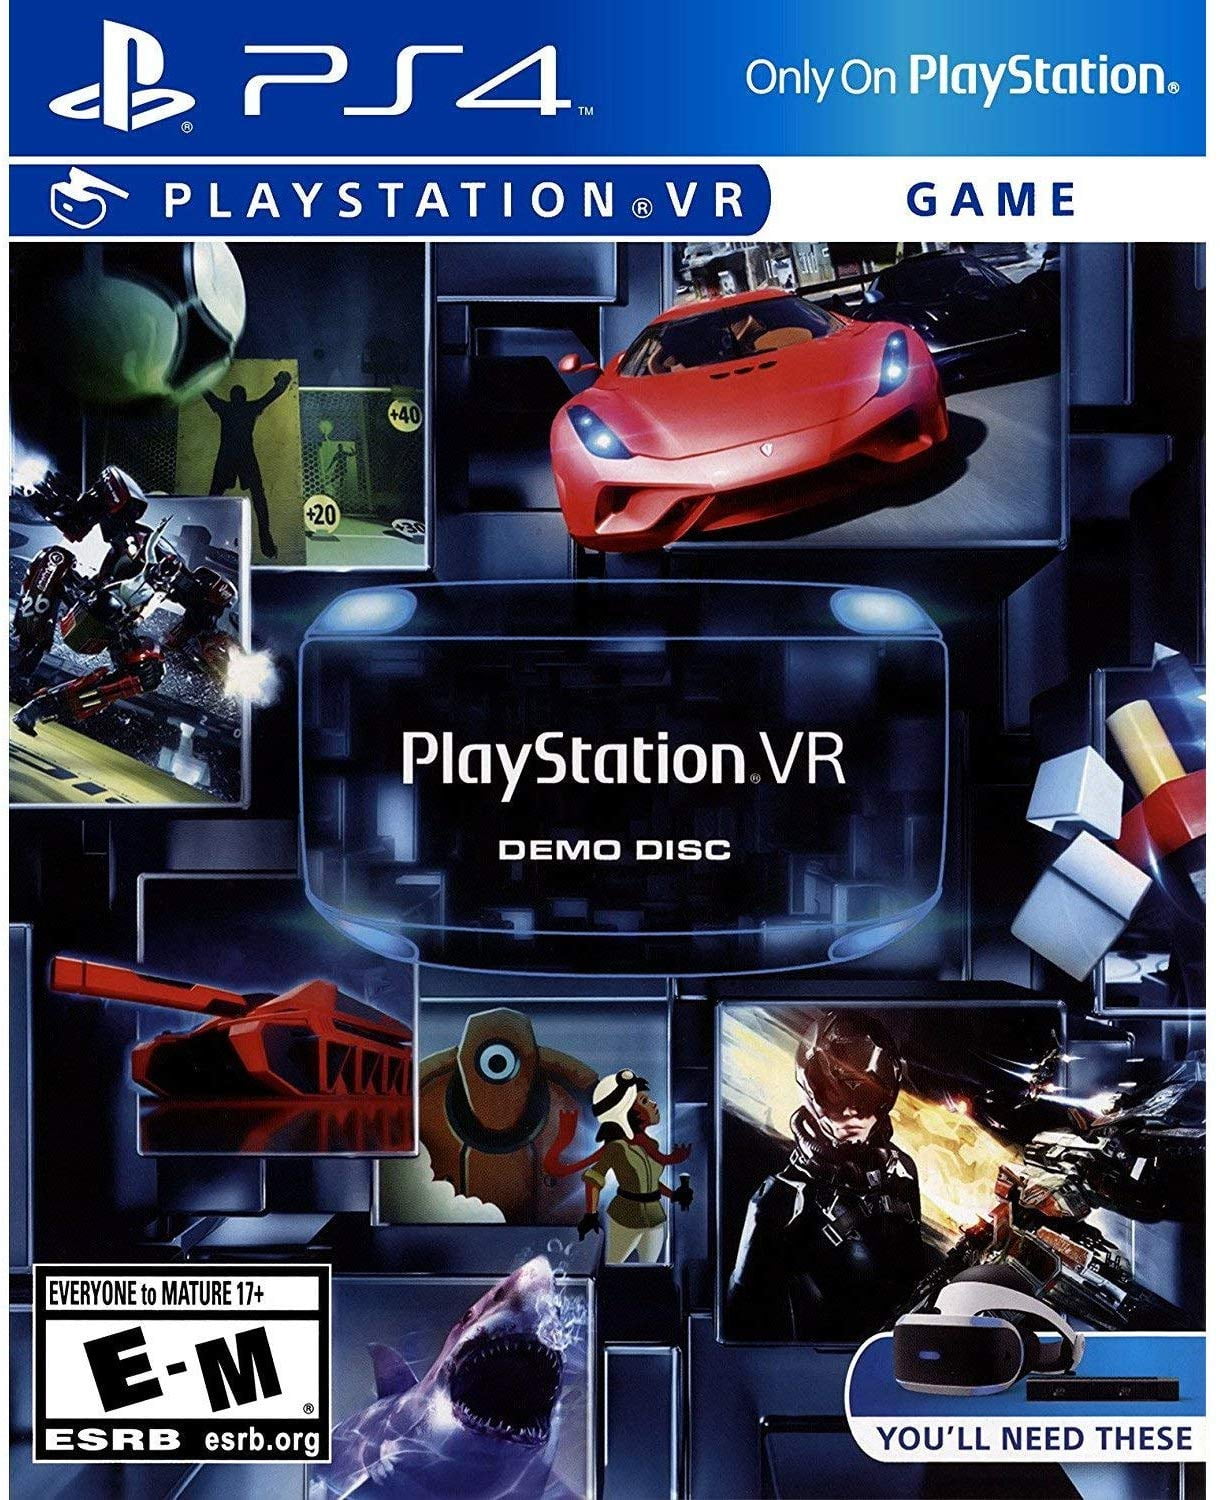 undskyld Mansion Beskrivelse Restored PlayStation VR Demo Disc (Game Only) (Used) - Walmart.com